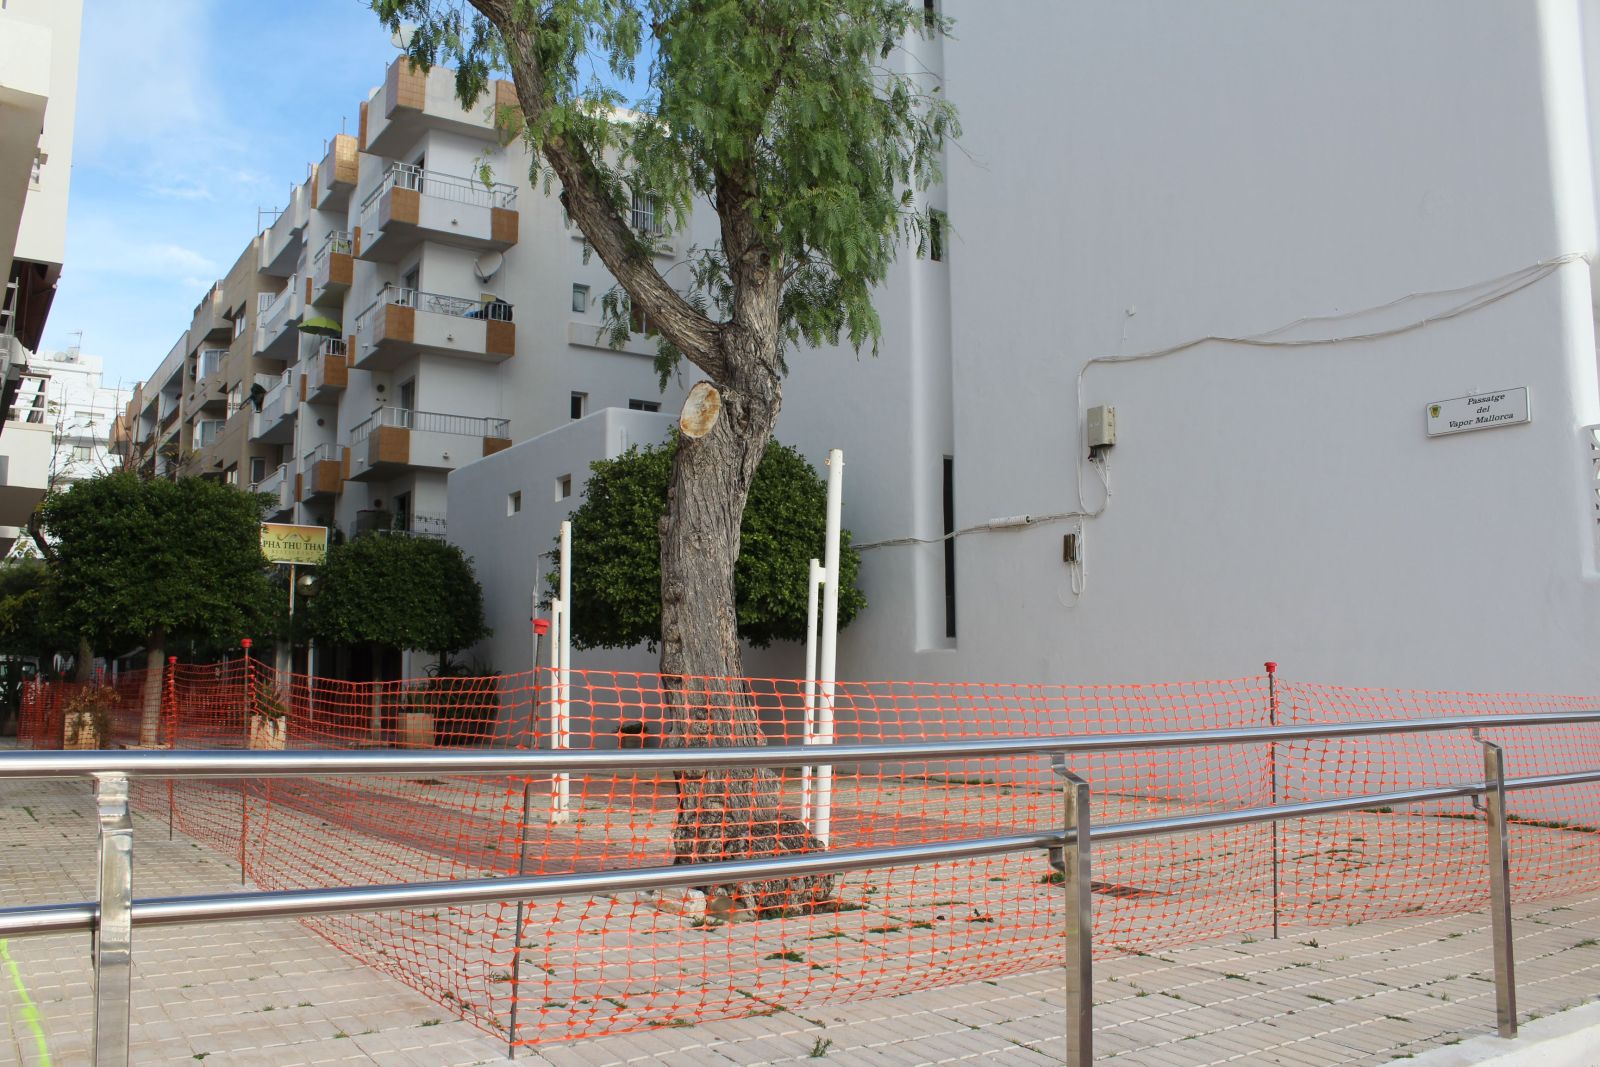 Comienzan los trabajos para la renovación del pasaje Vapor Mallorca y su conversión en calle residencial con preferencia de los peatones y límite de 20 km/h